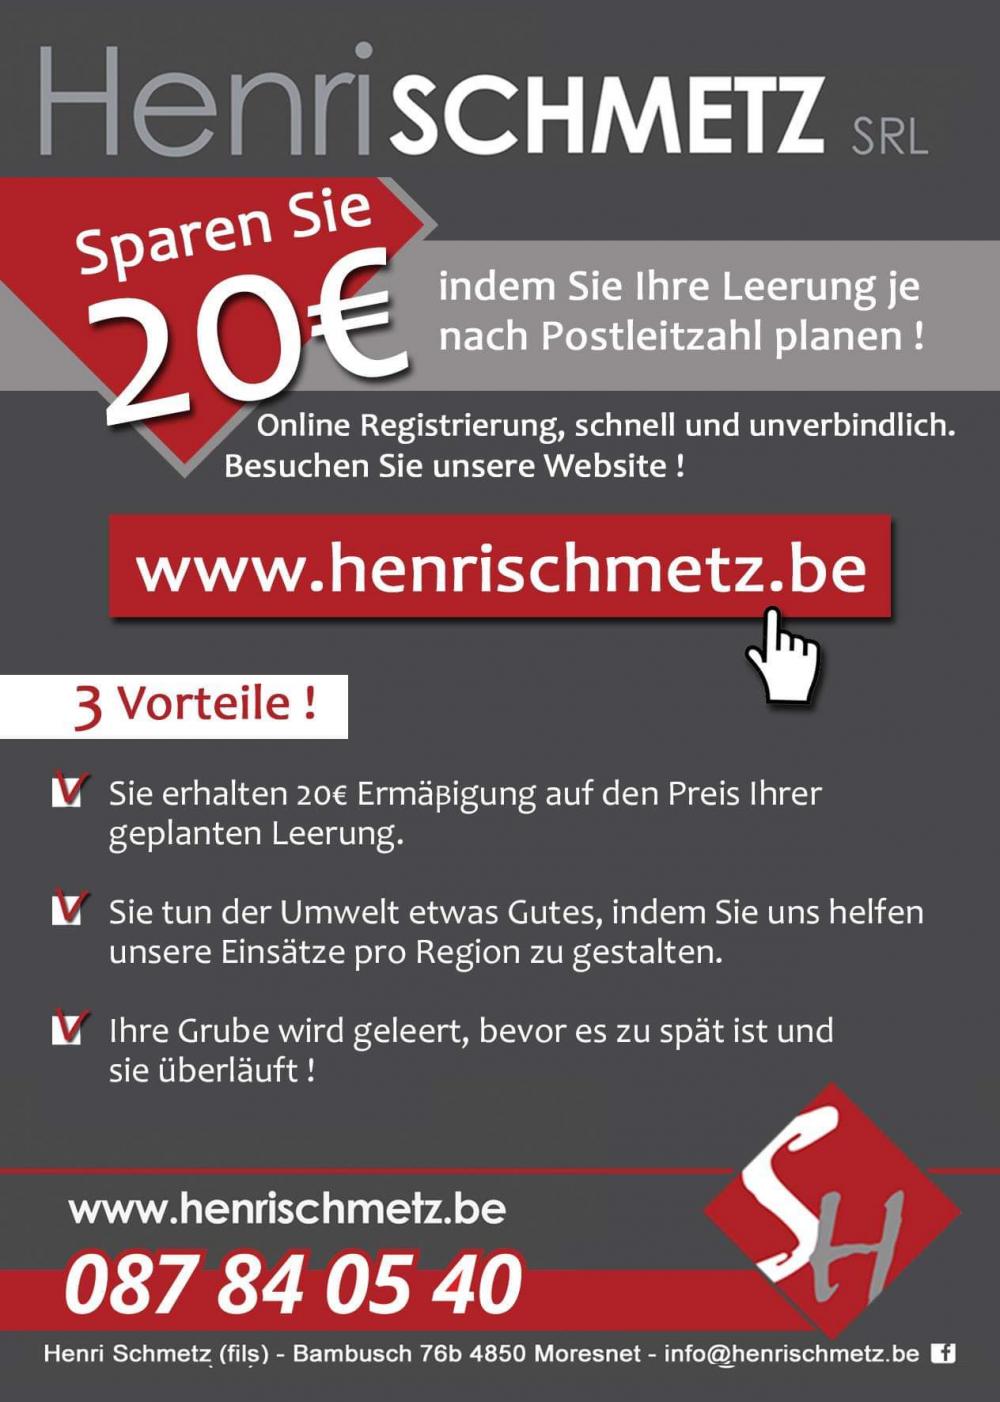 www.henrischmetz.be > Home > Online-Registrierung